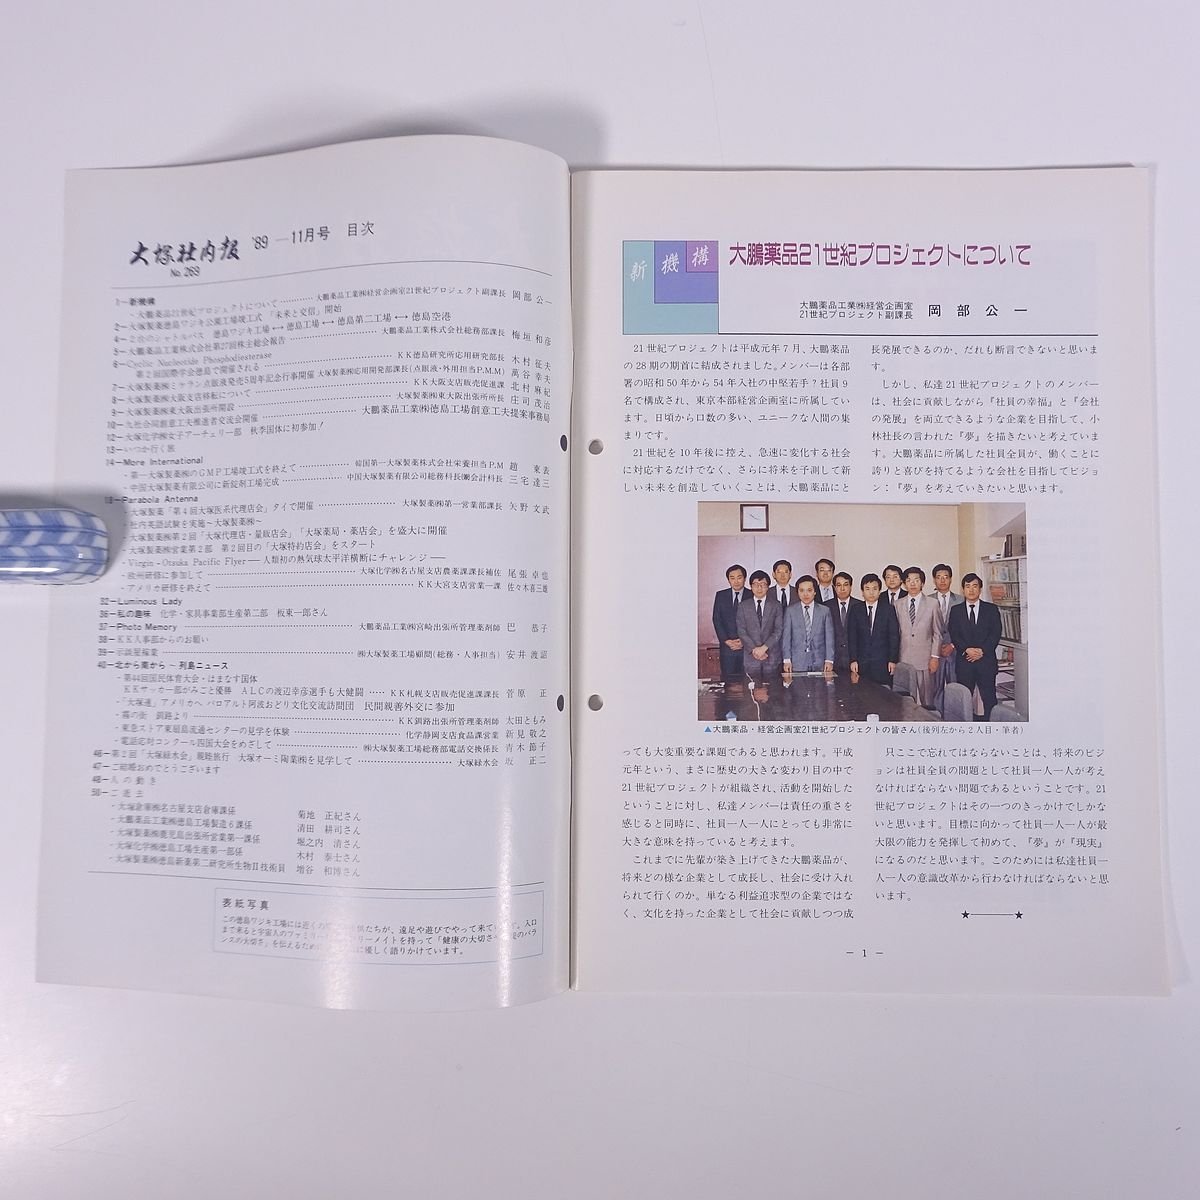 大塚社内報 No.269 1989/11 大塚製薬 小冊子 社内誌 社内報_画像5